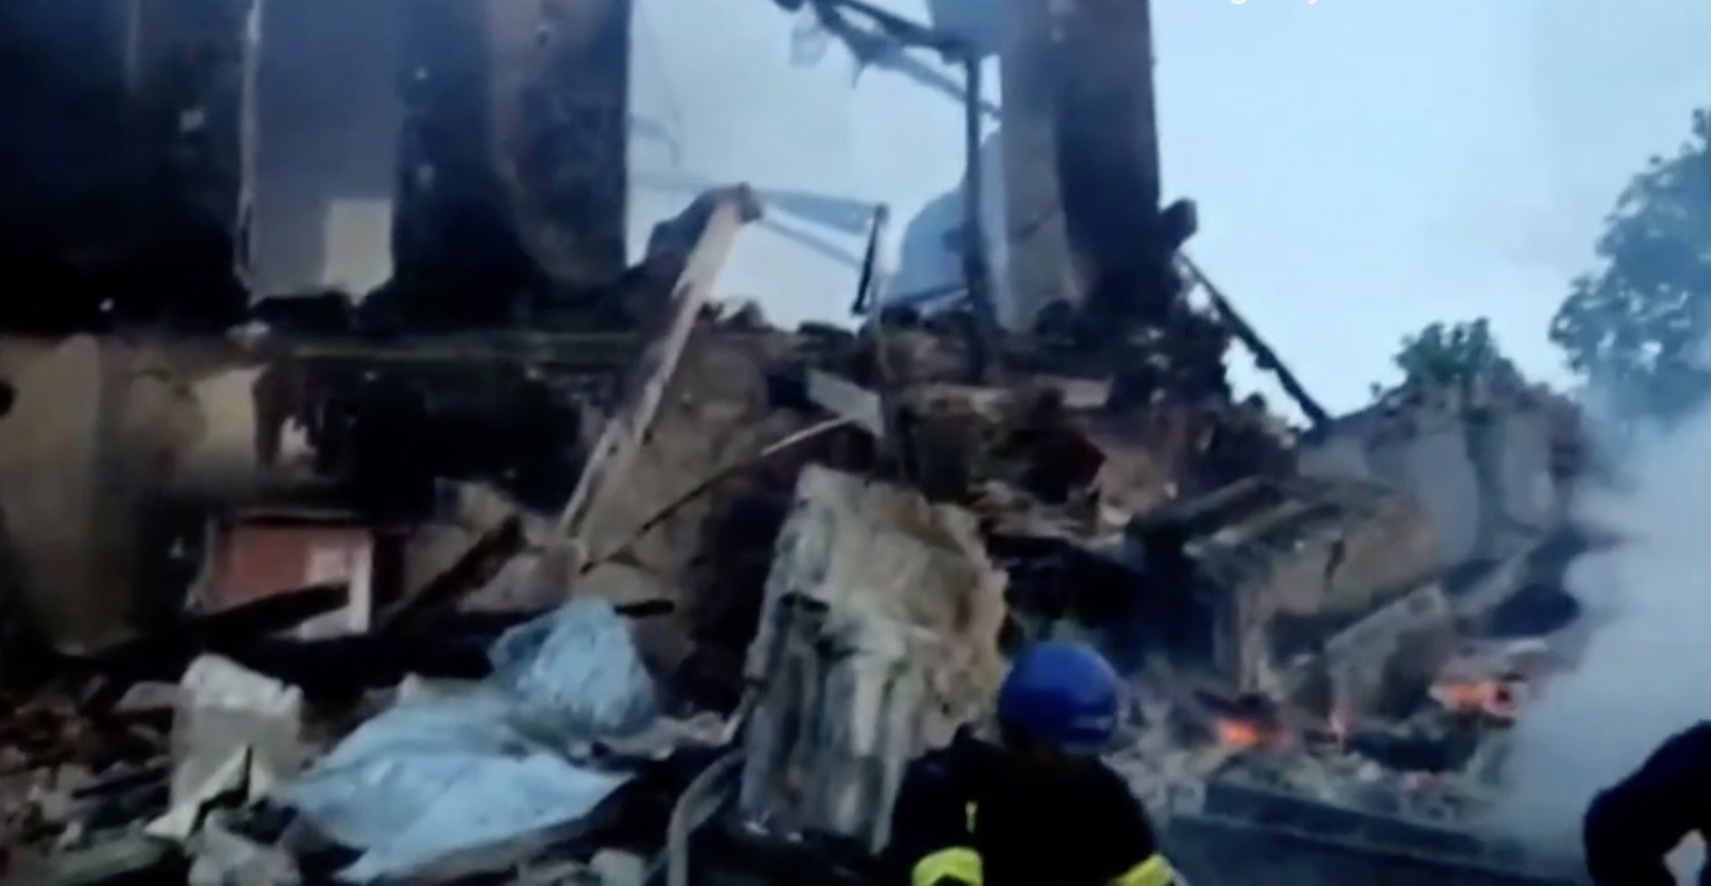 Meerdere doden bij bombardementen op school in Oekraïne